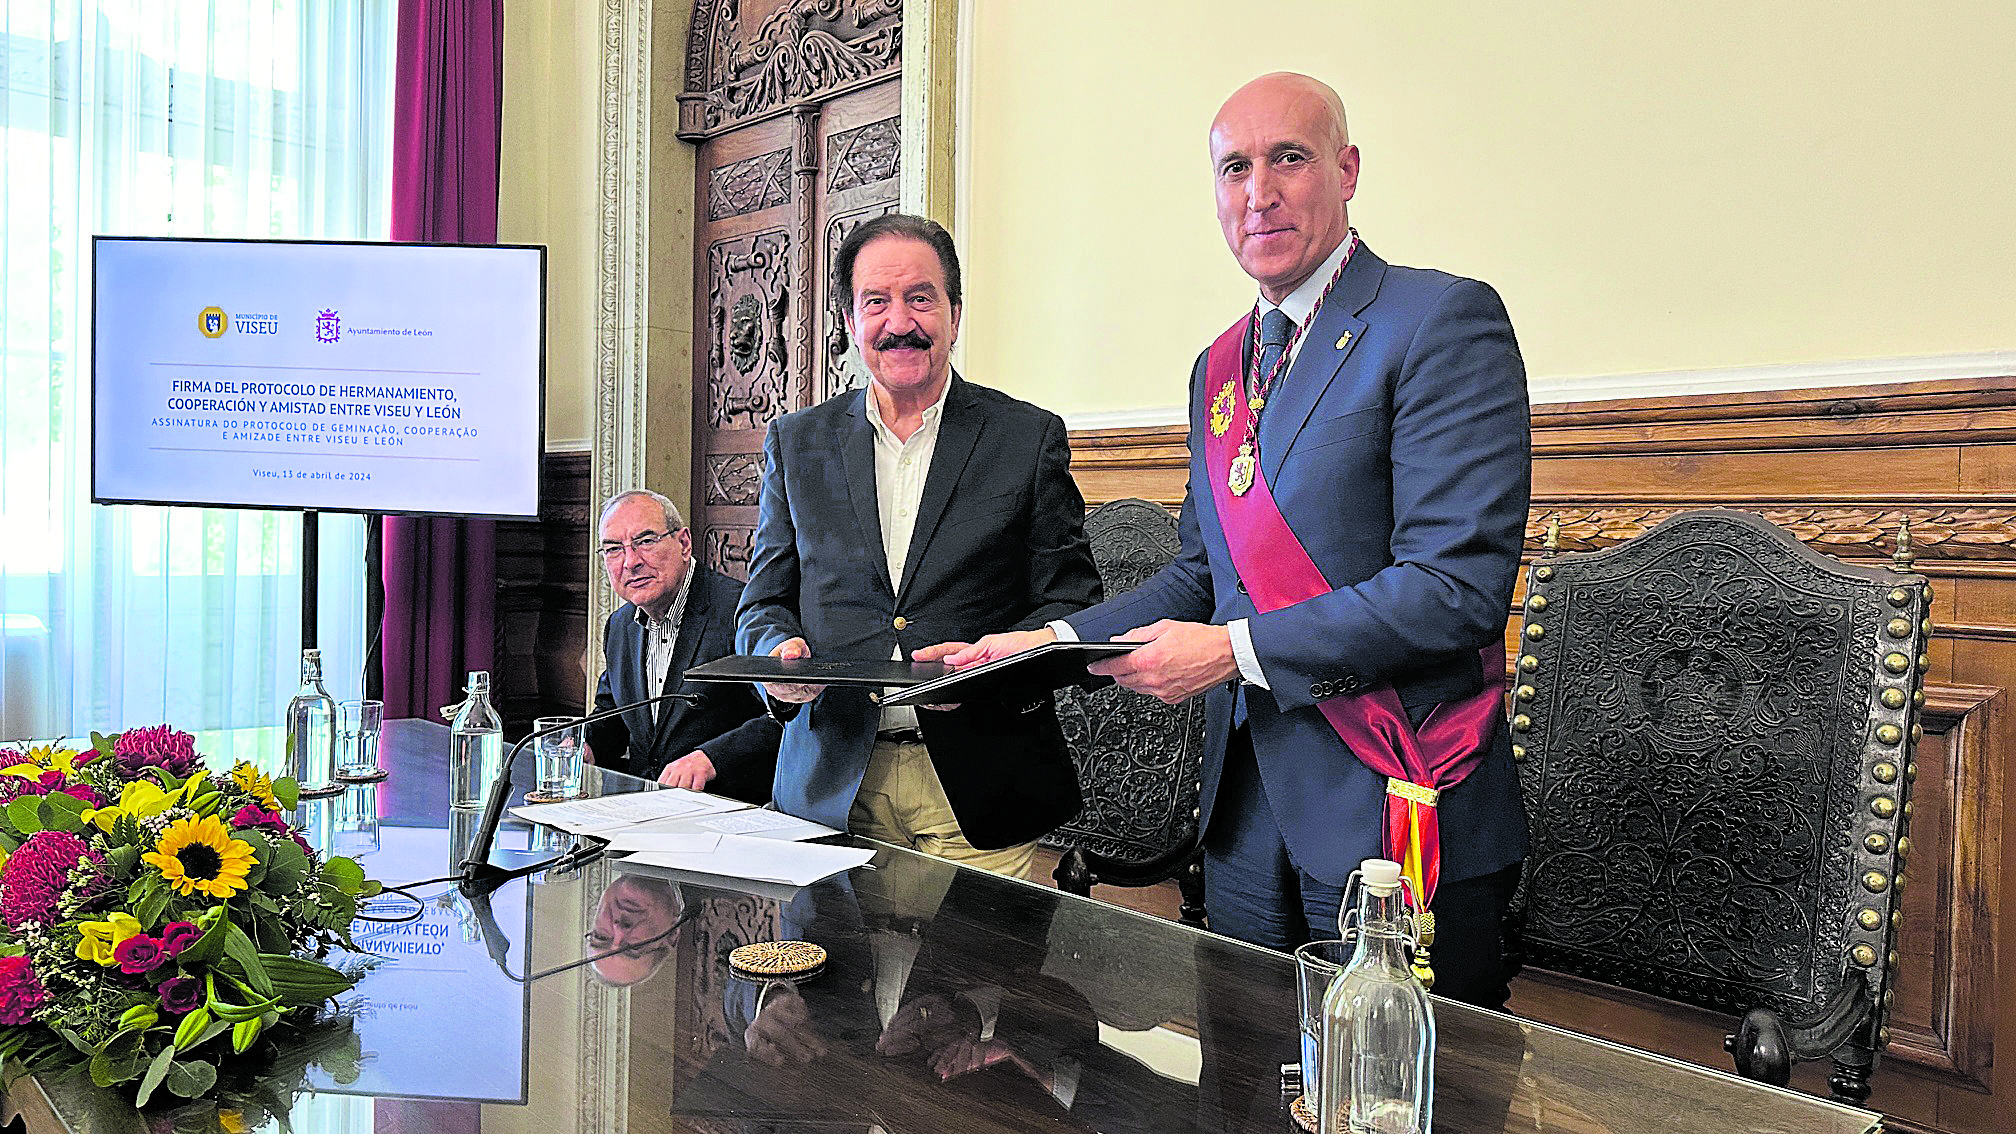 Firma del protocolo de hermanamiento entre León y Visau este sábado en la ciudad portuguesa. | L.N.C.